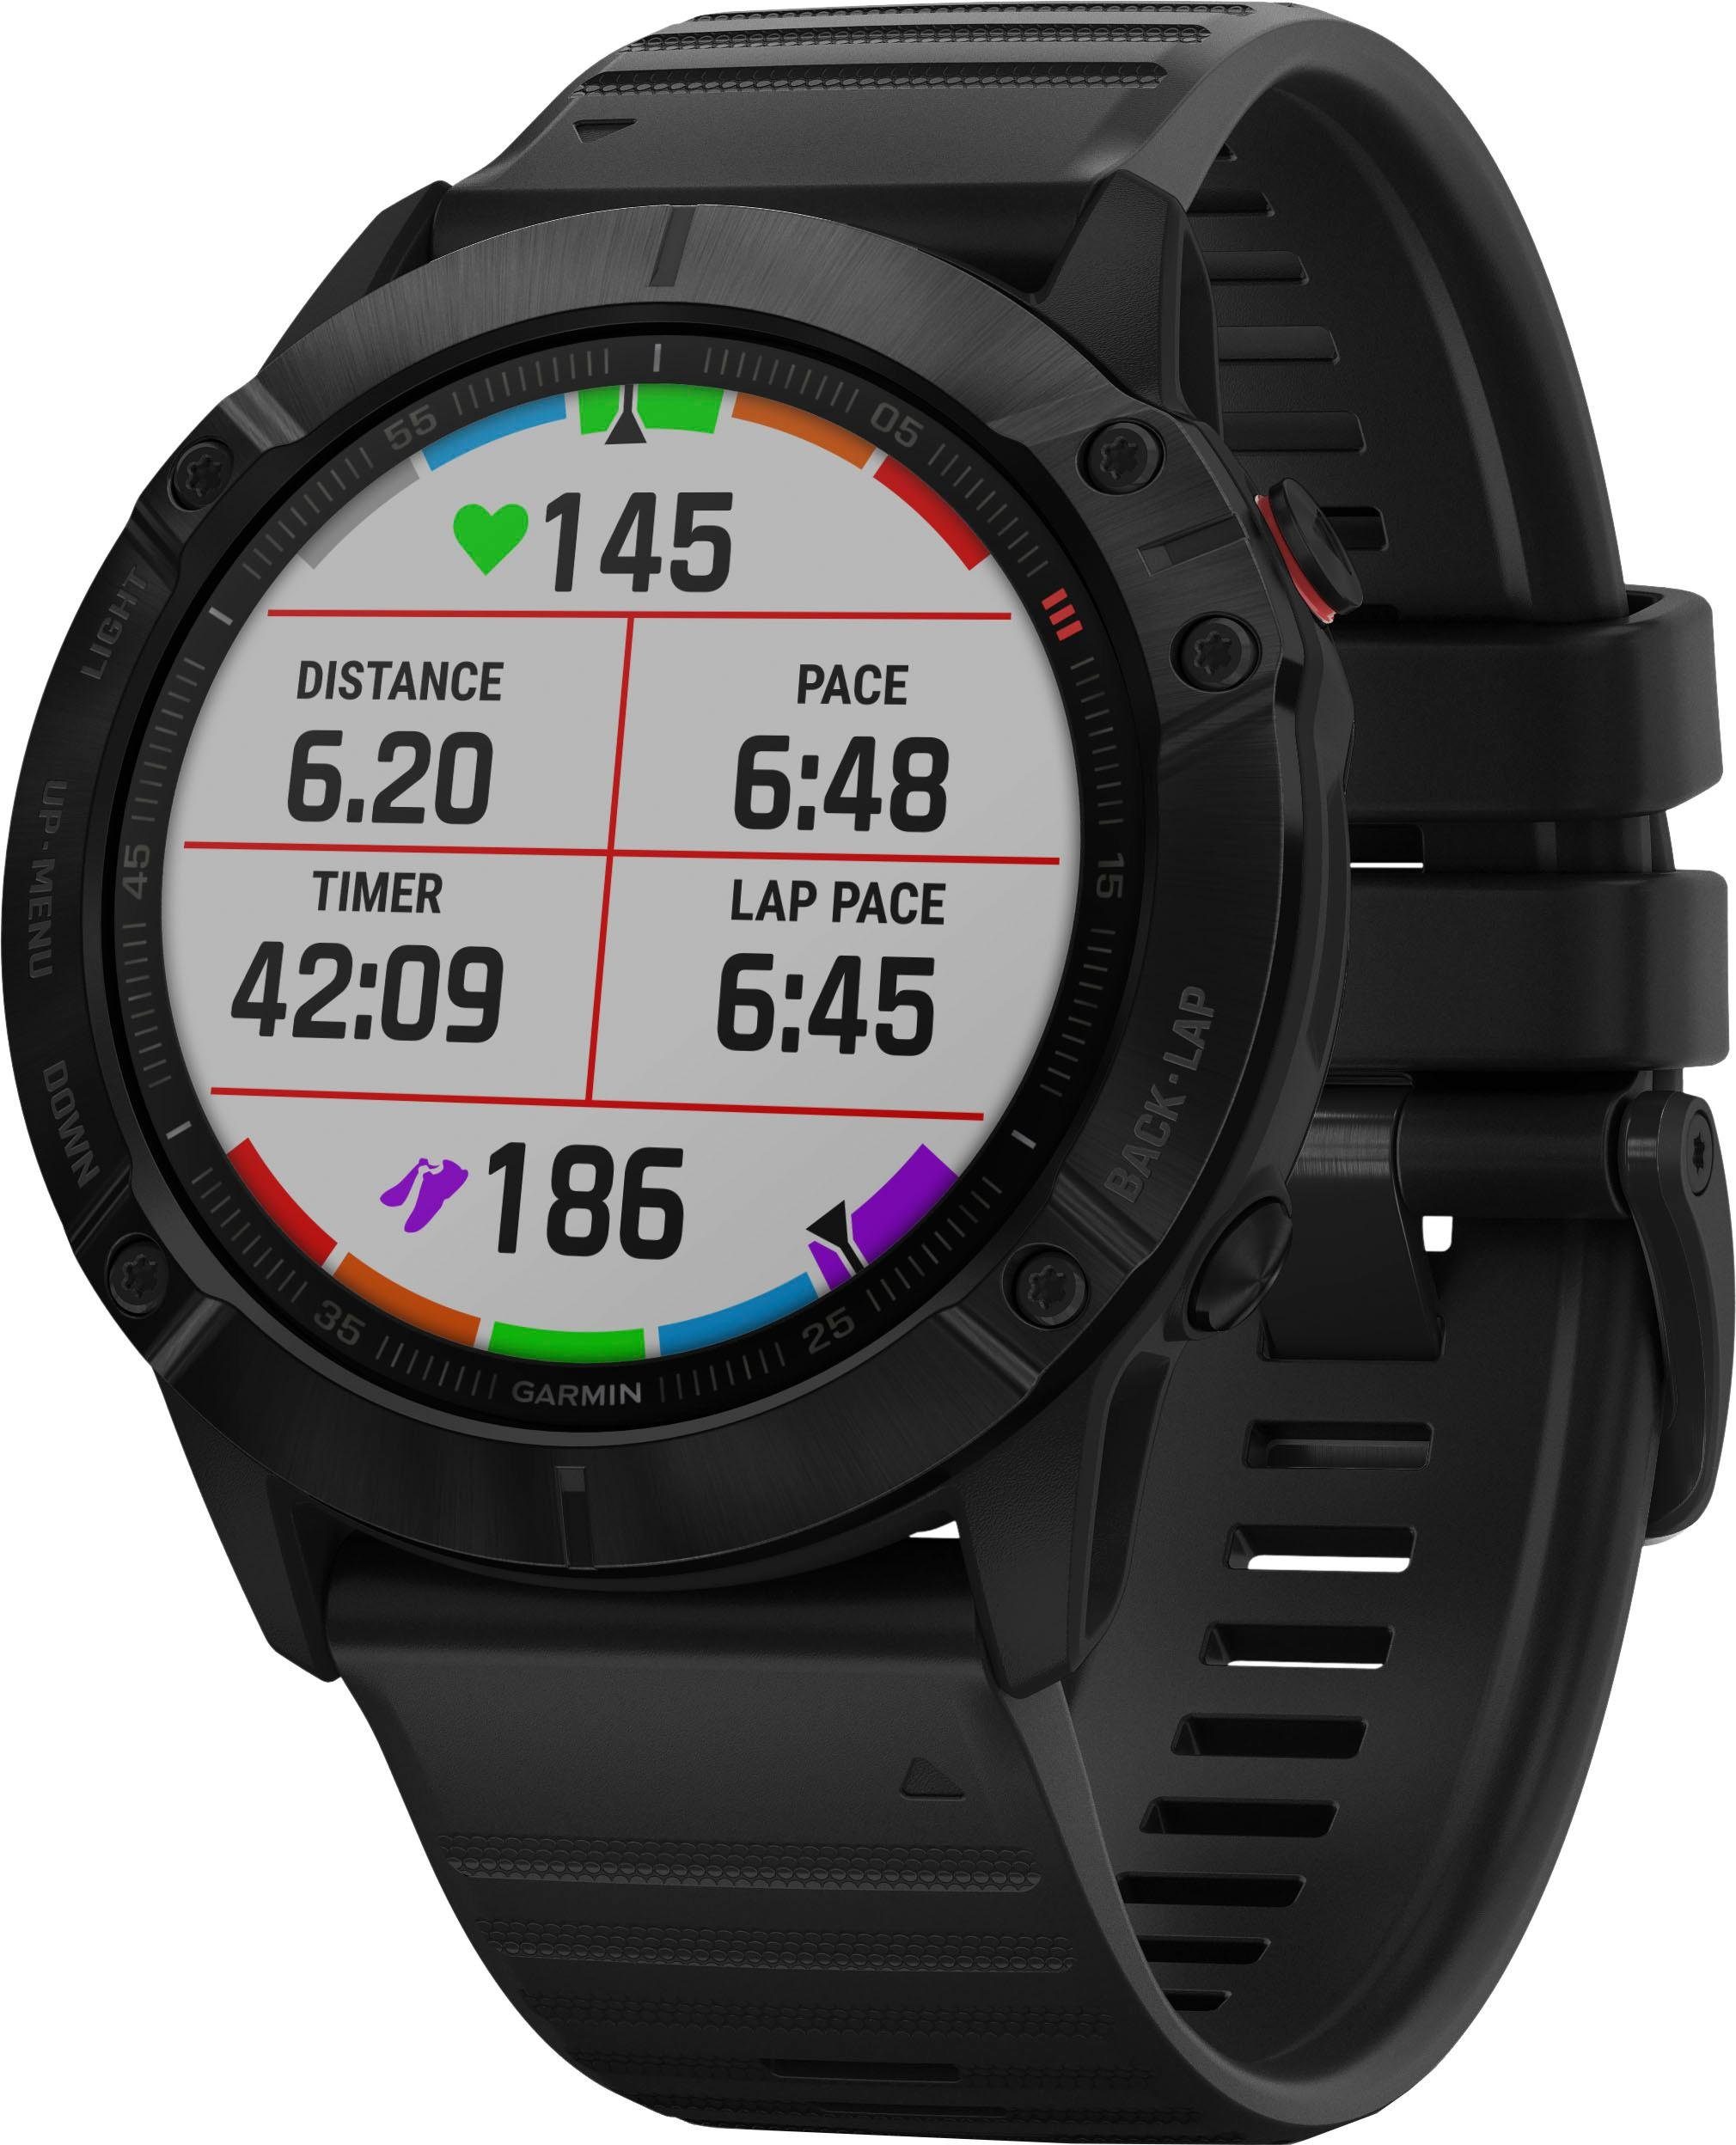 Garmin fēnix 6X – Pro Smartwatch (3,56 cm/1,4 Zoll) online kaufen | OTTO